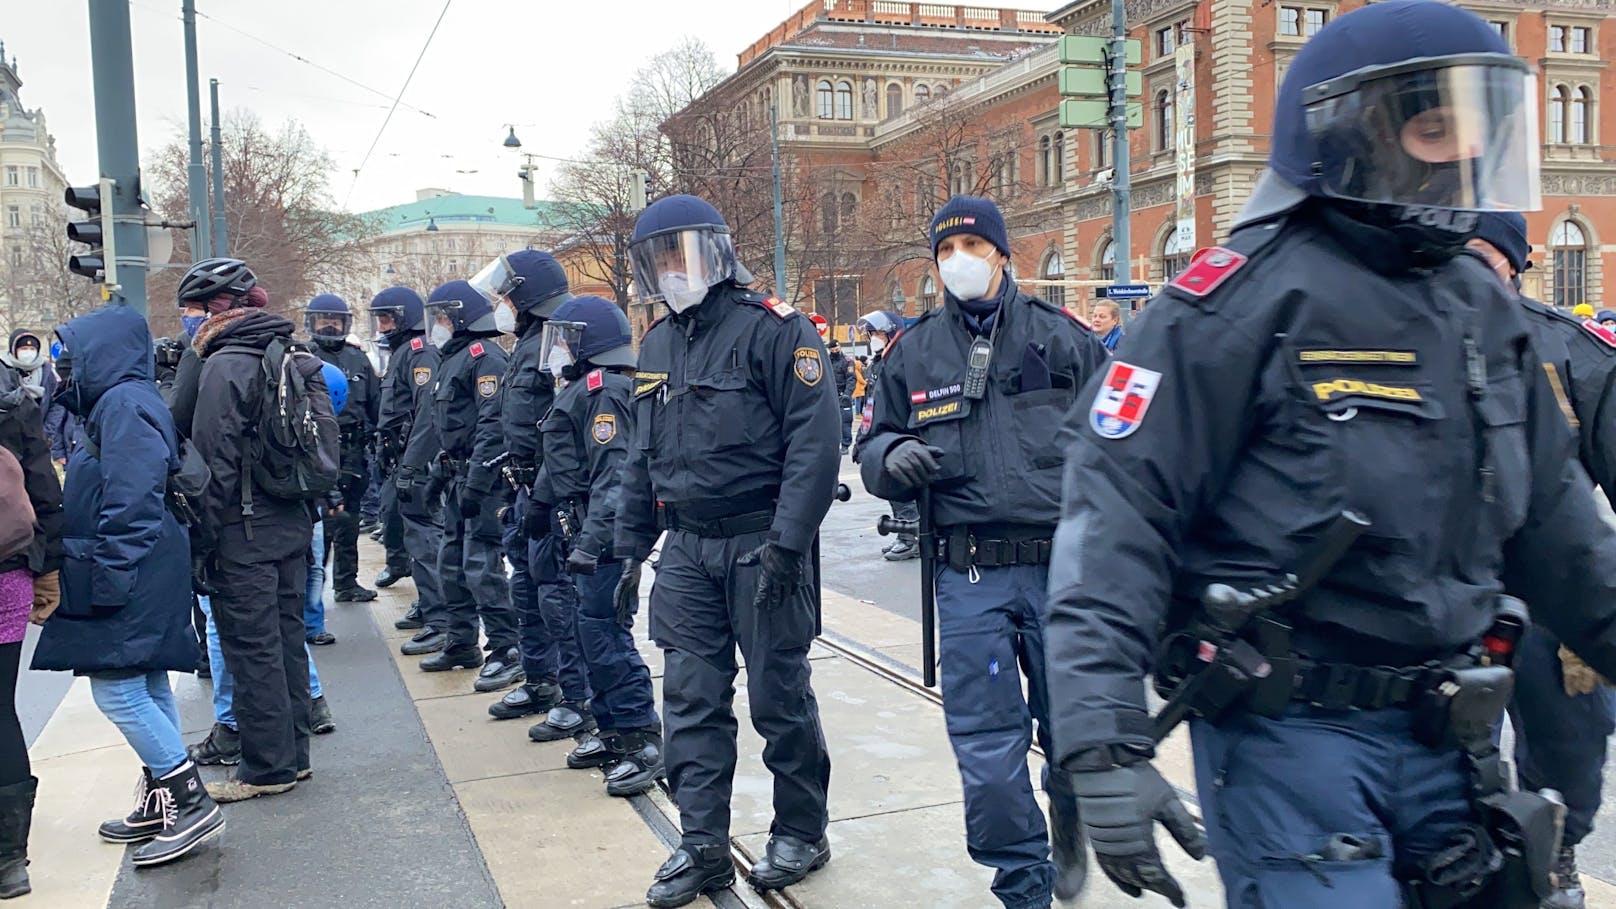 Polizeiaufgebot im Zuge einer Demonstration in Wien. Symbolbild.